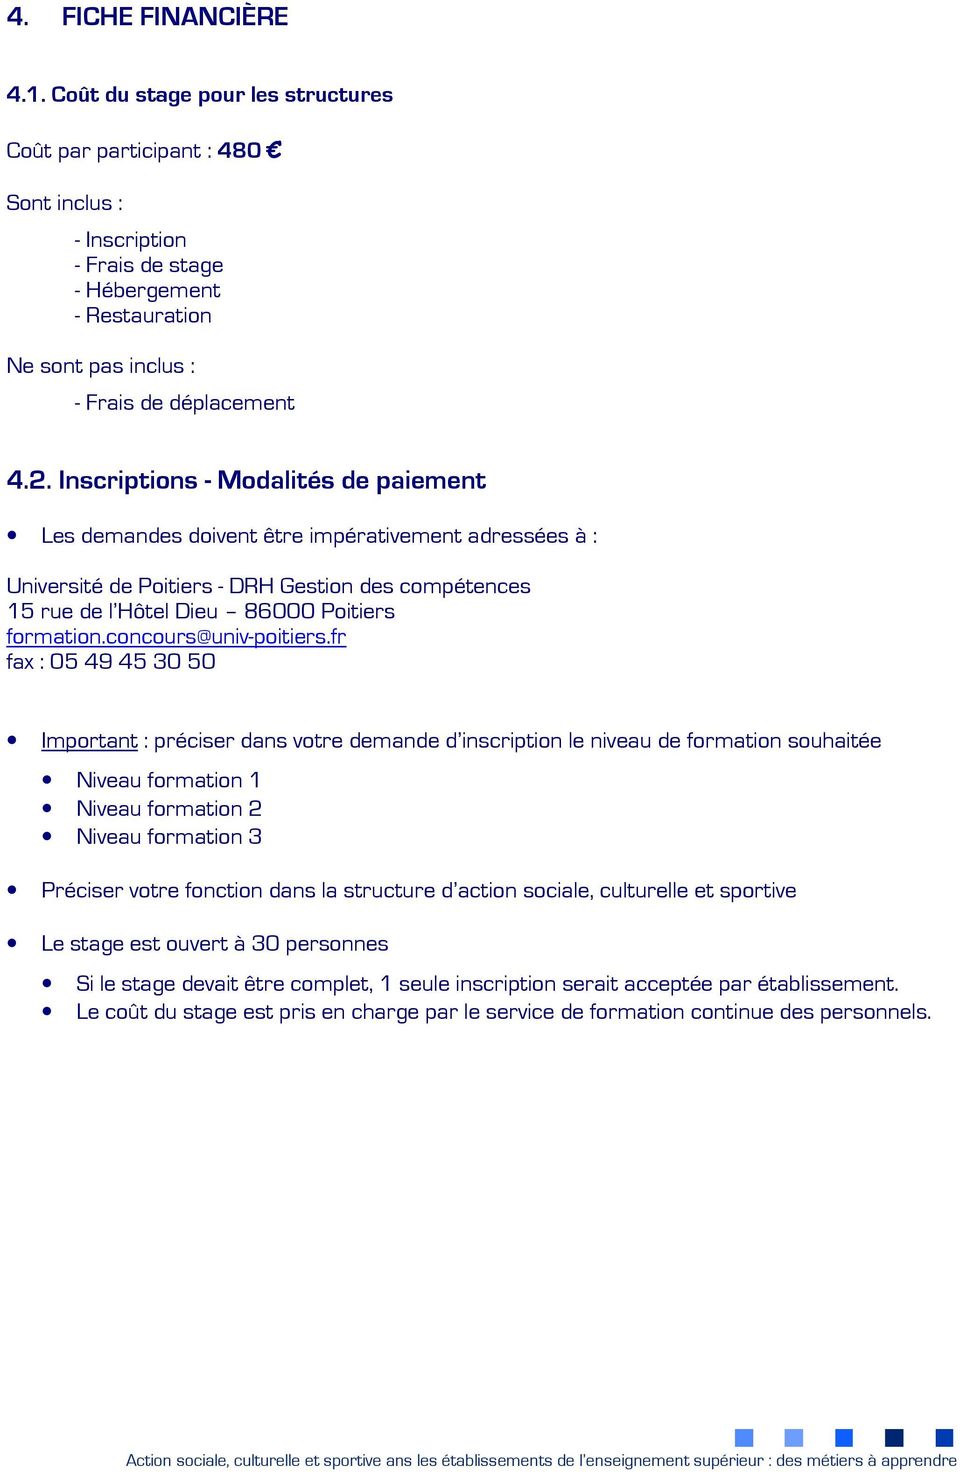 Inscriptions - Modalités de paiement Les demandes doivent être impérativement adressées à : Université de Poitiers - DRH Gestion des compétences 15 rue de l Hôtel Dieu 86000 Poitiers formation.